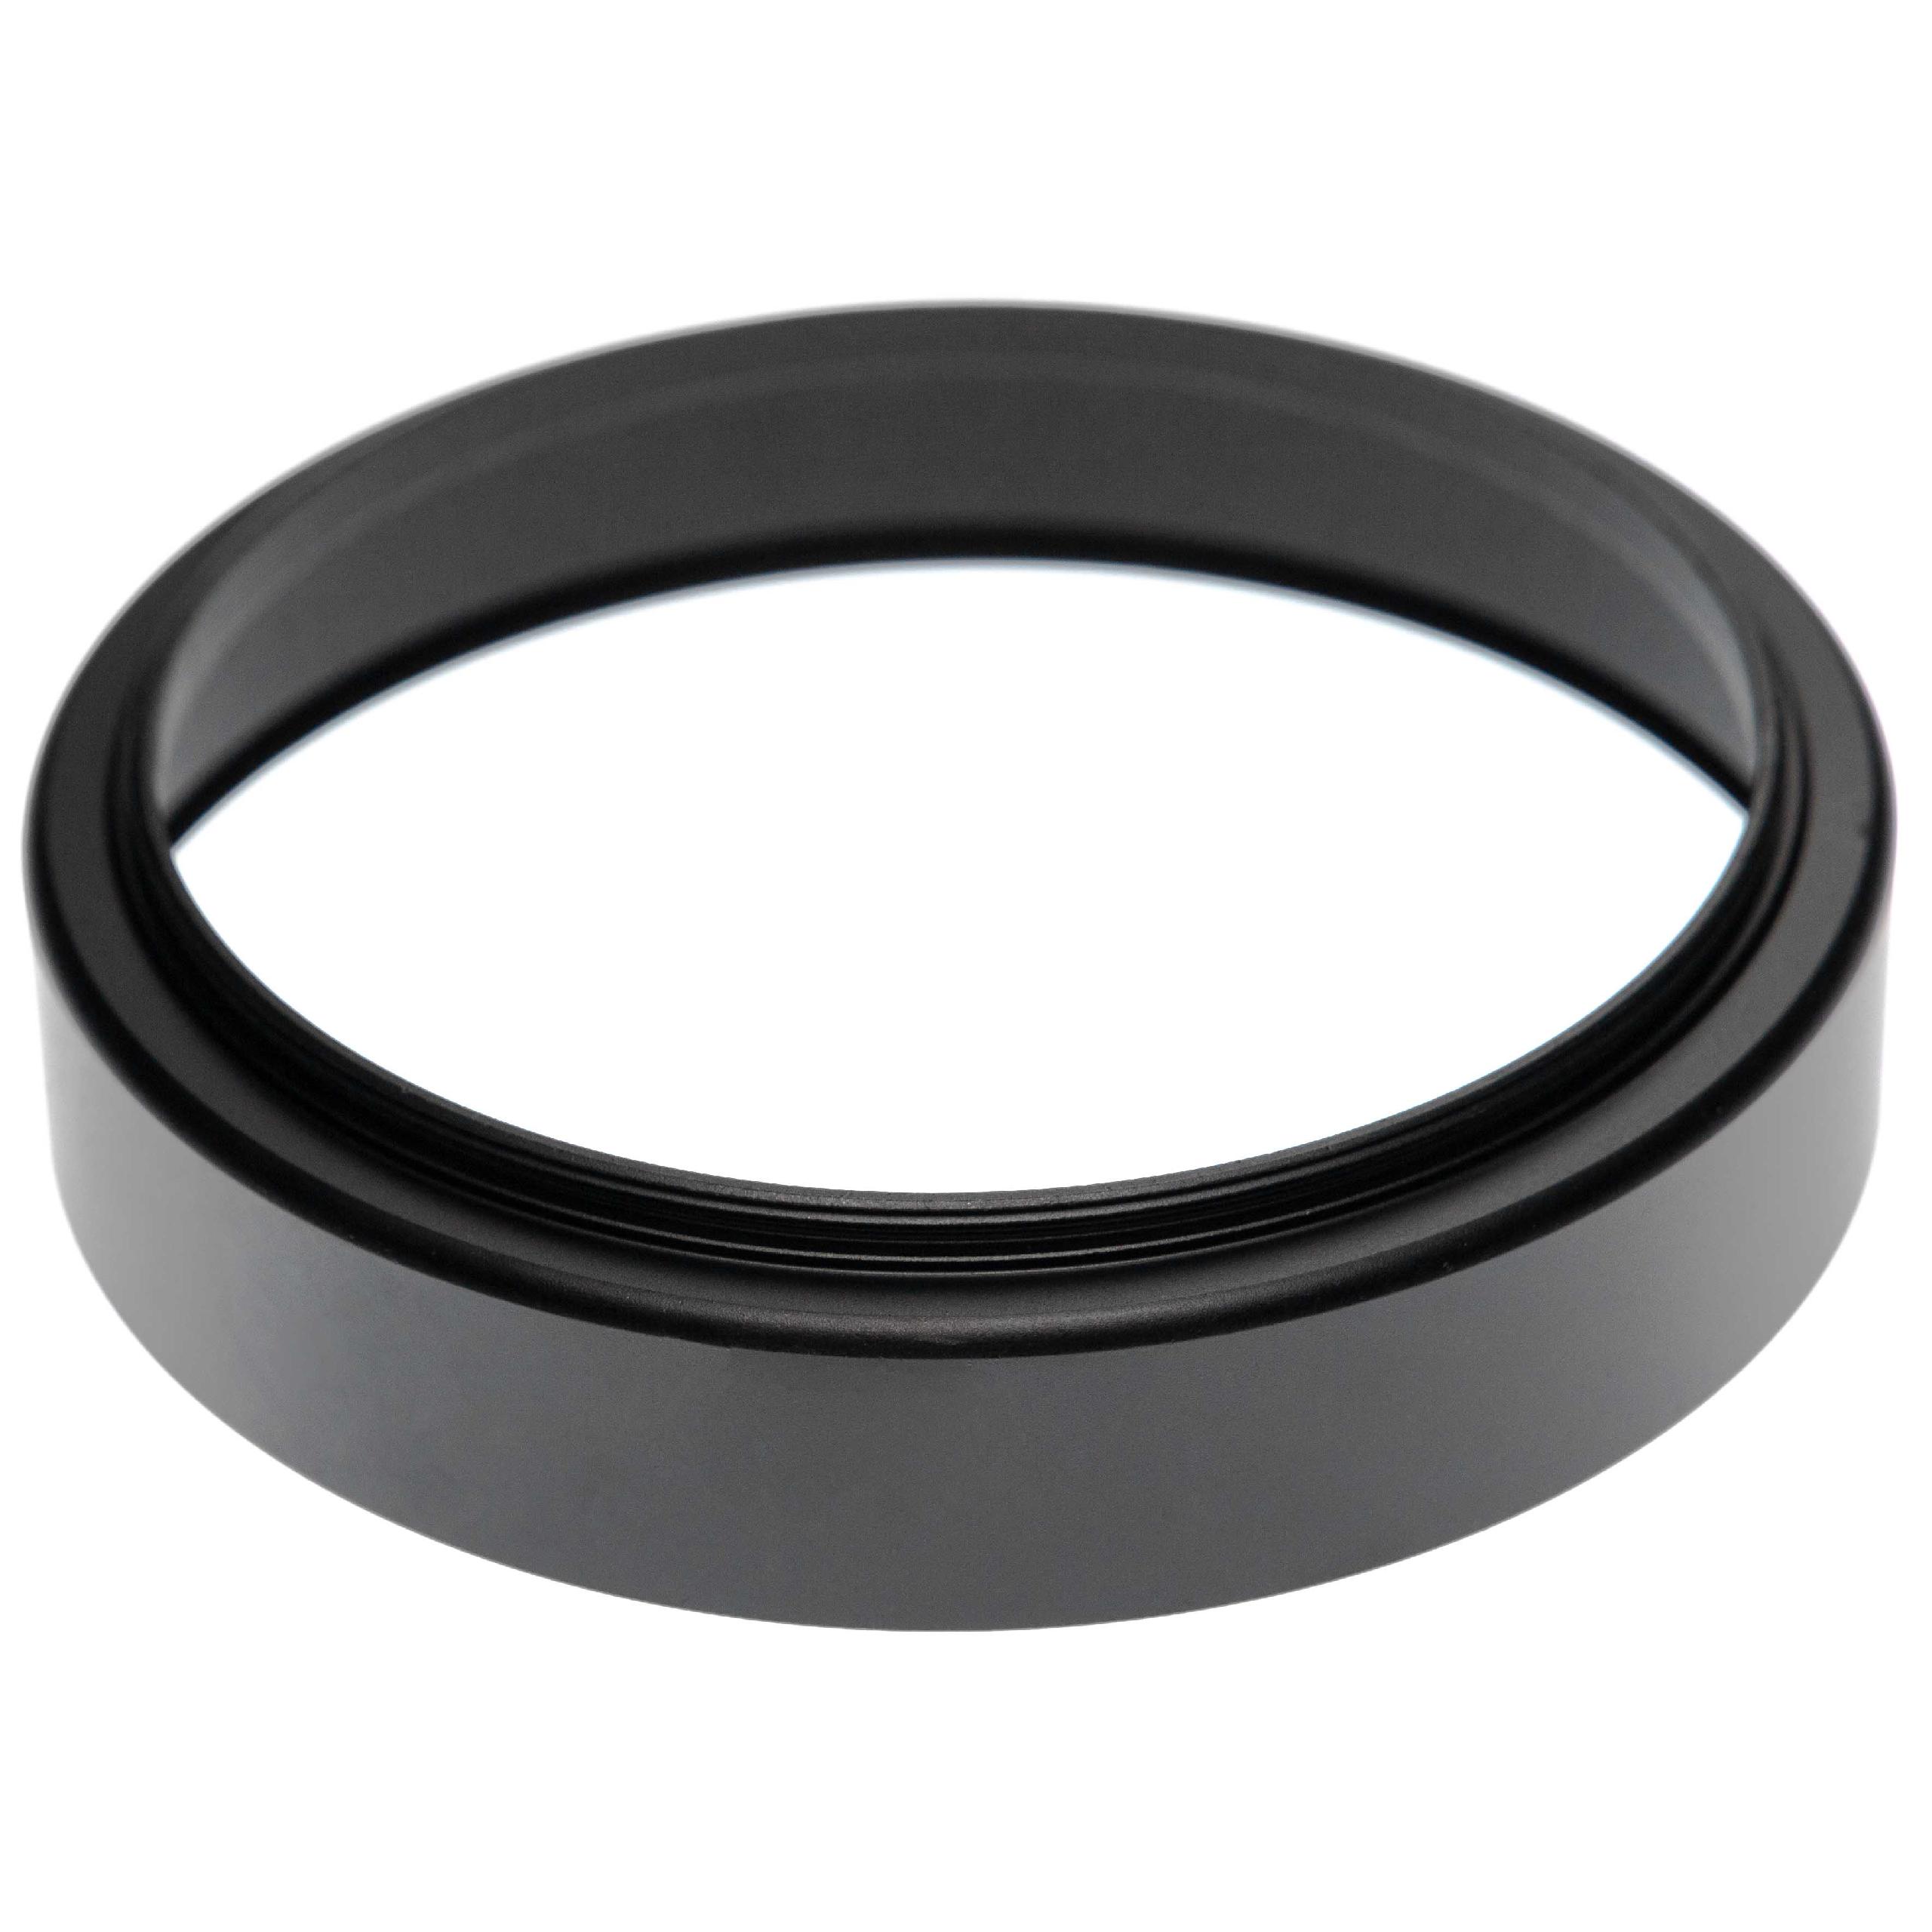 Pare-soleil pour objectif de 95mm - Cache, avec filetage (104mm) Noir, rond